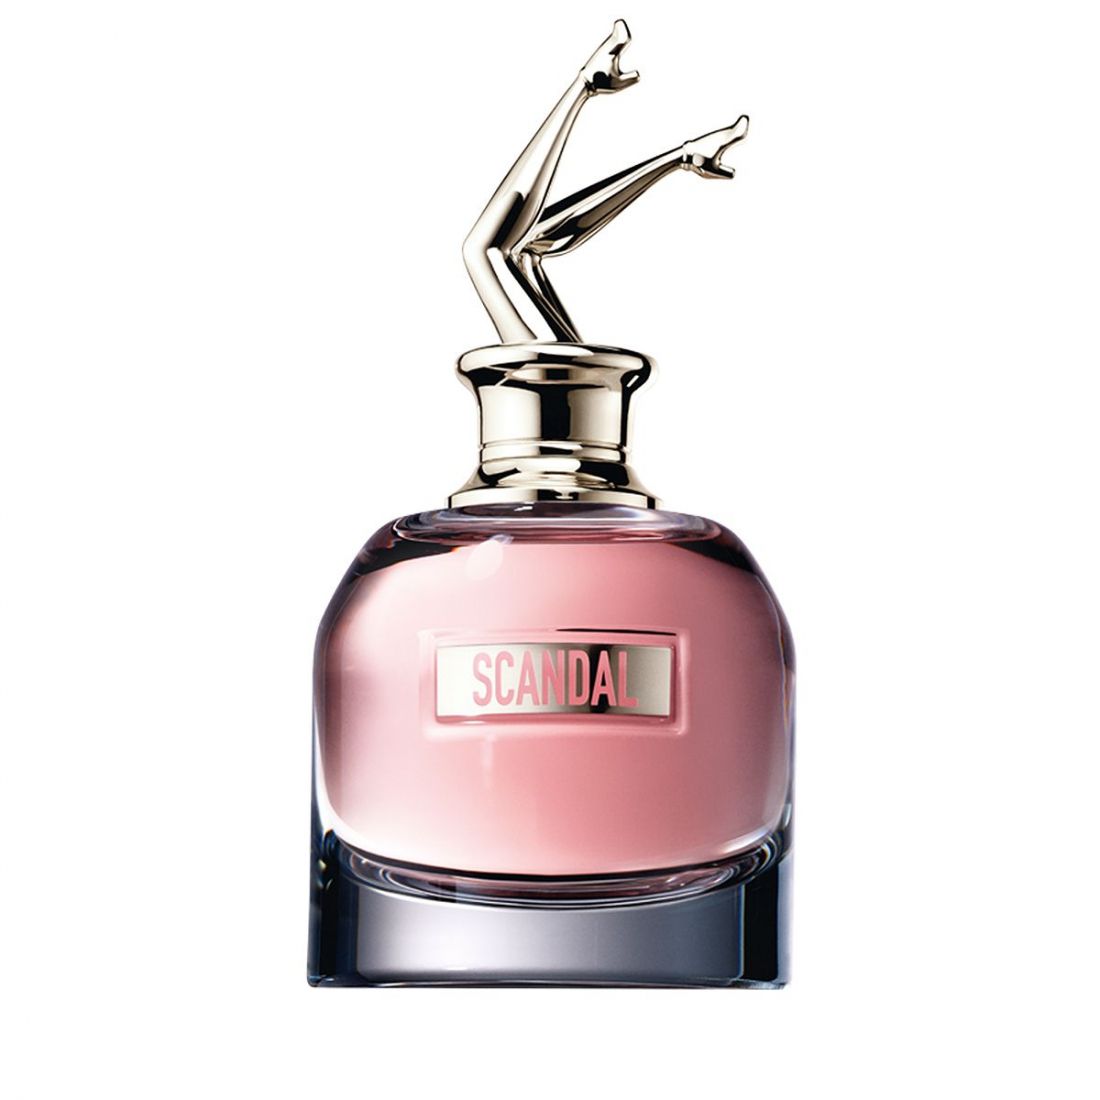 Jean Paul Gaultier - Eau de parfum 'Scandal' - 80 ml